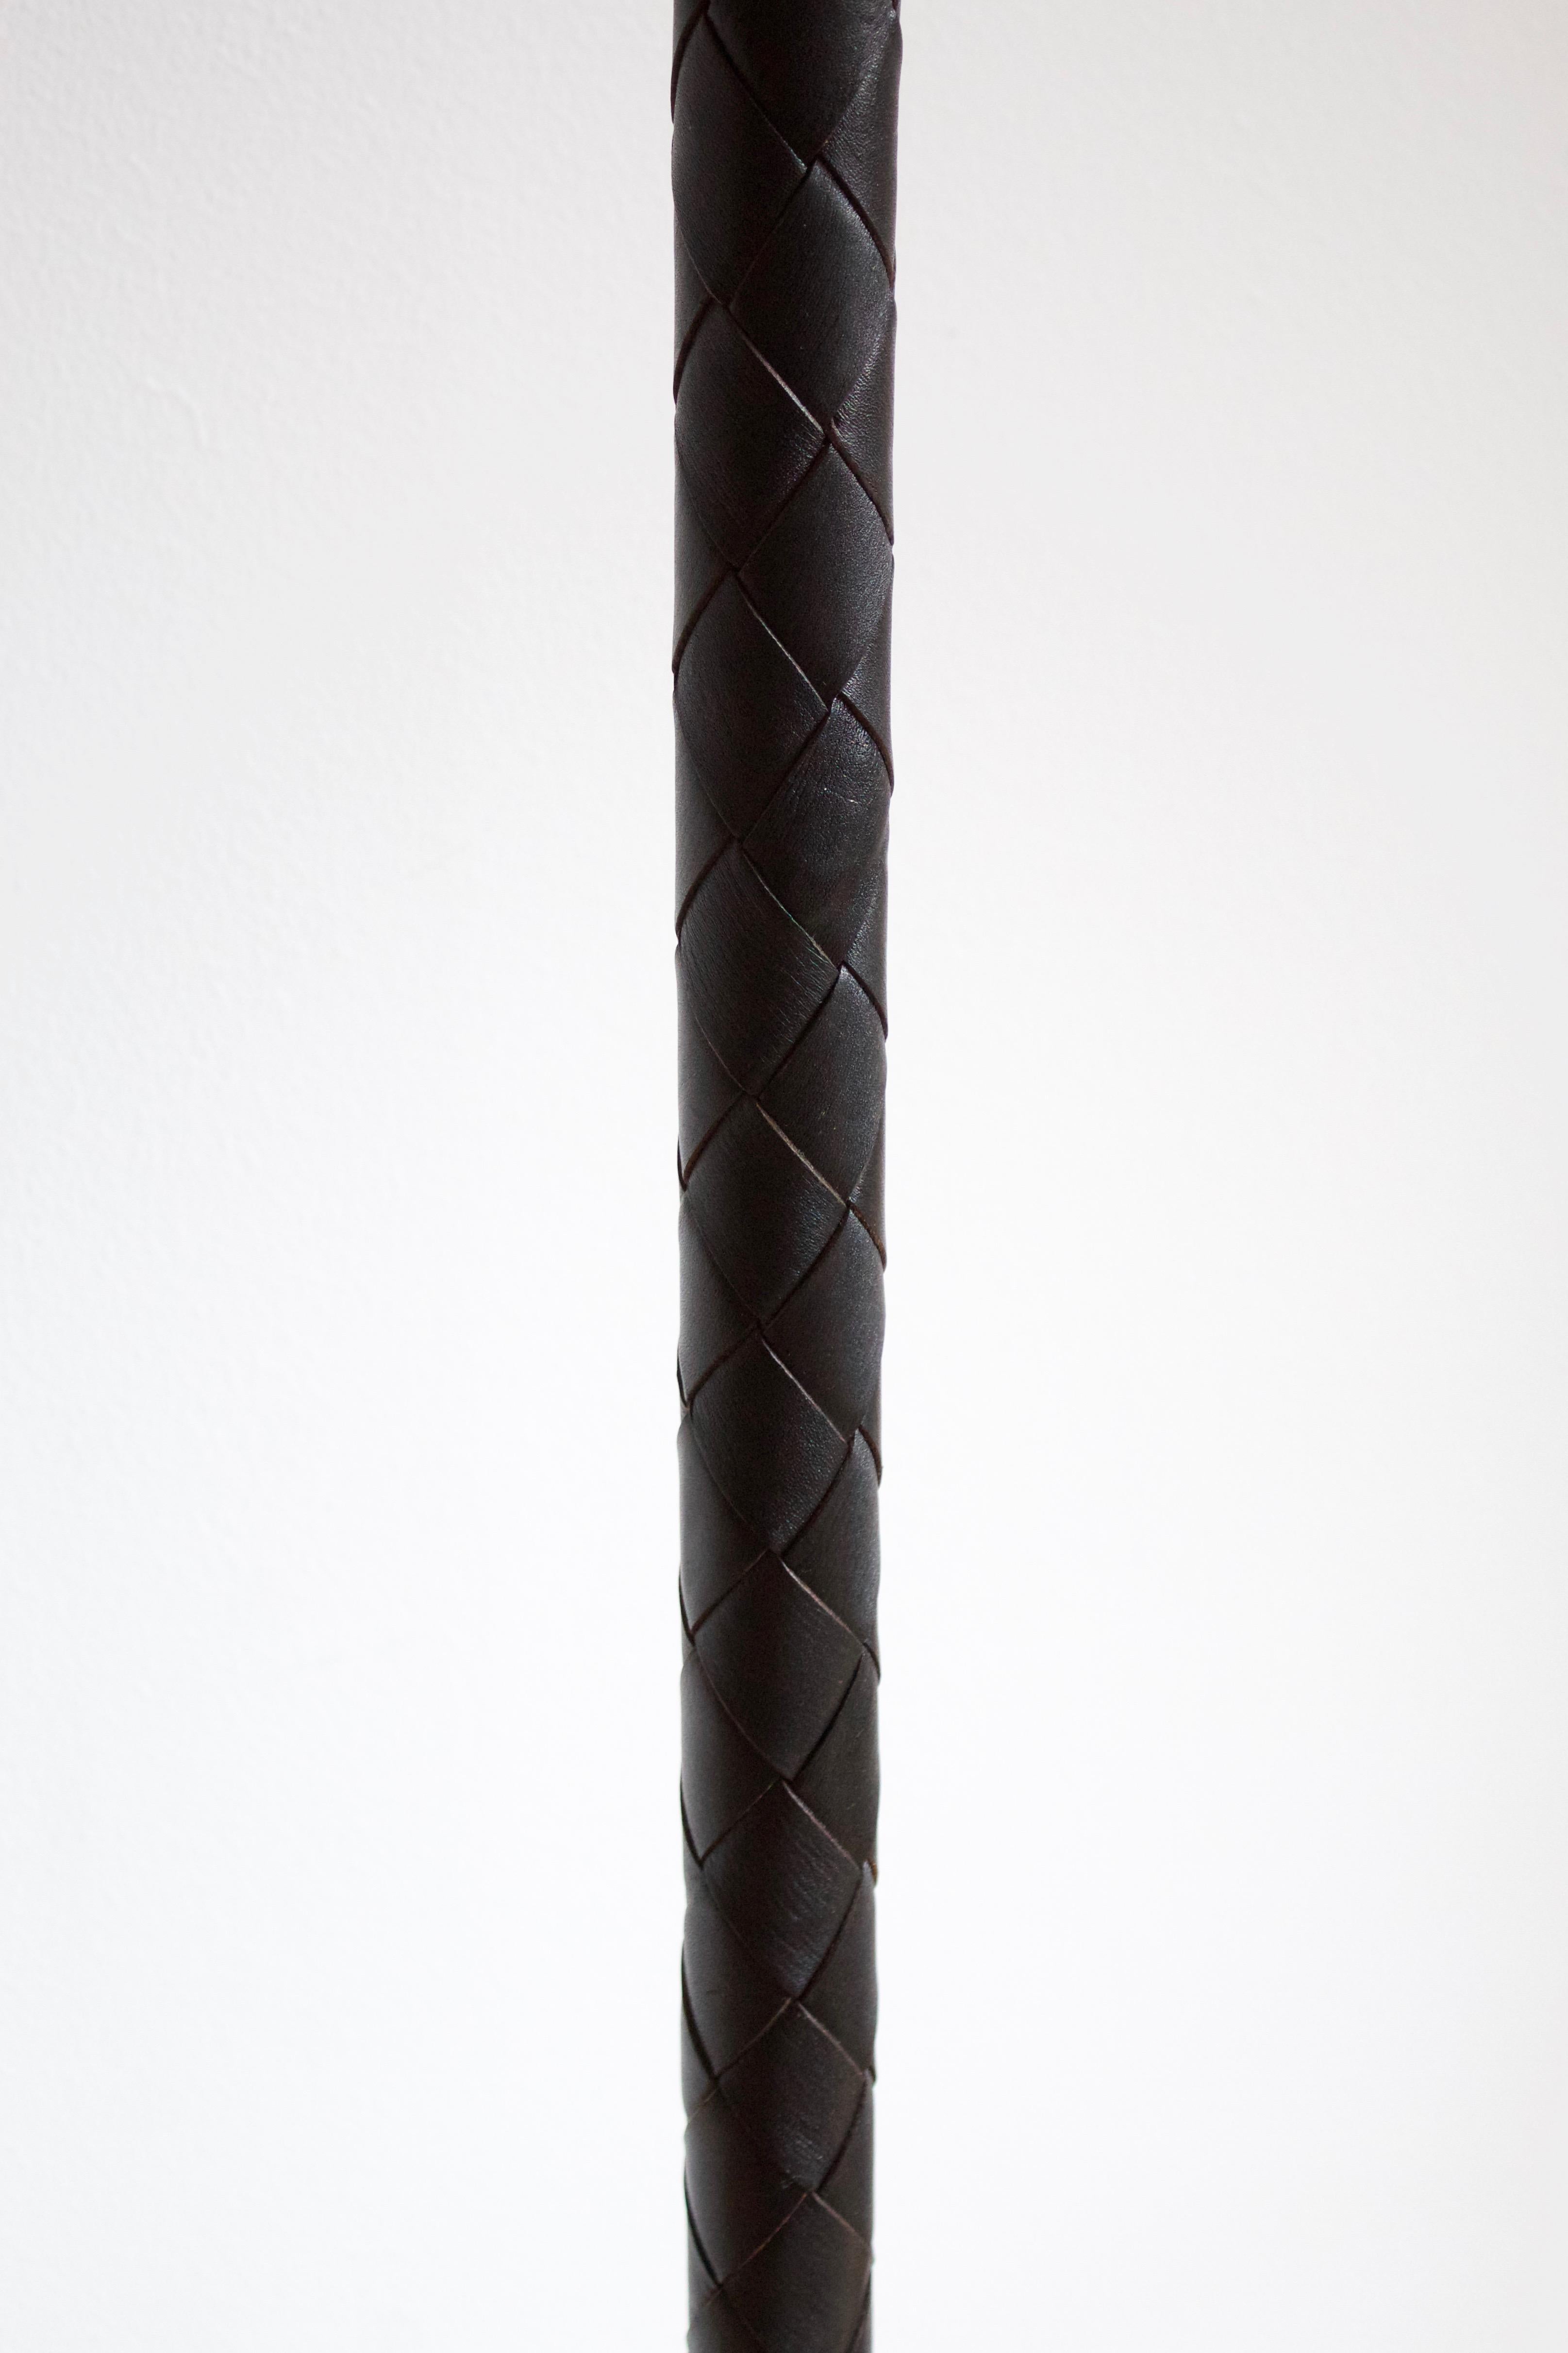 Danish Jo Hammerborg, Floor Lamp Steel Black Dyed Leather, Fog & Mørup Denmark, 1970s